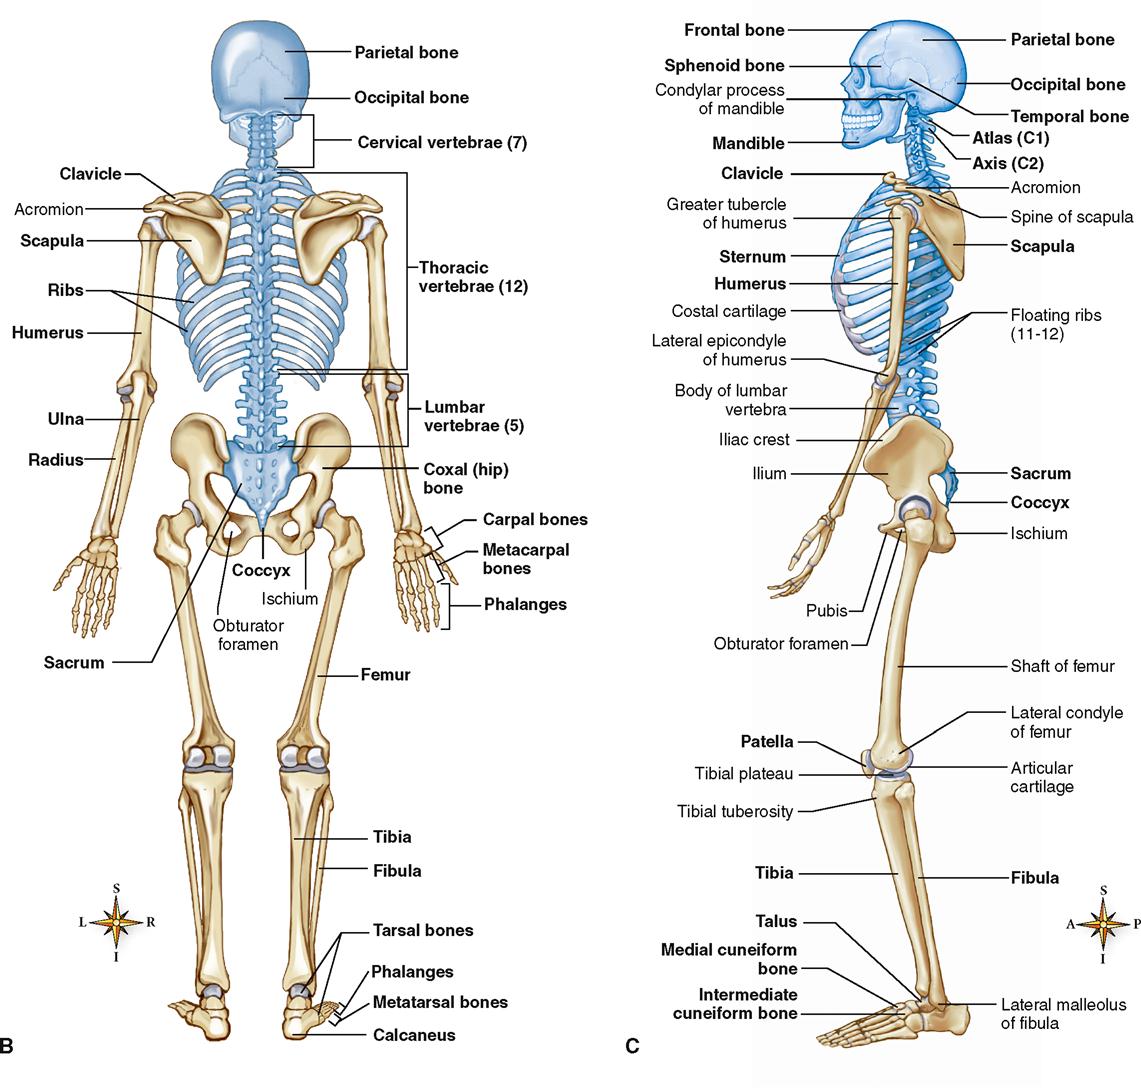 Скелет человека с названием костей на русском и латинском